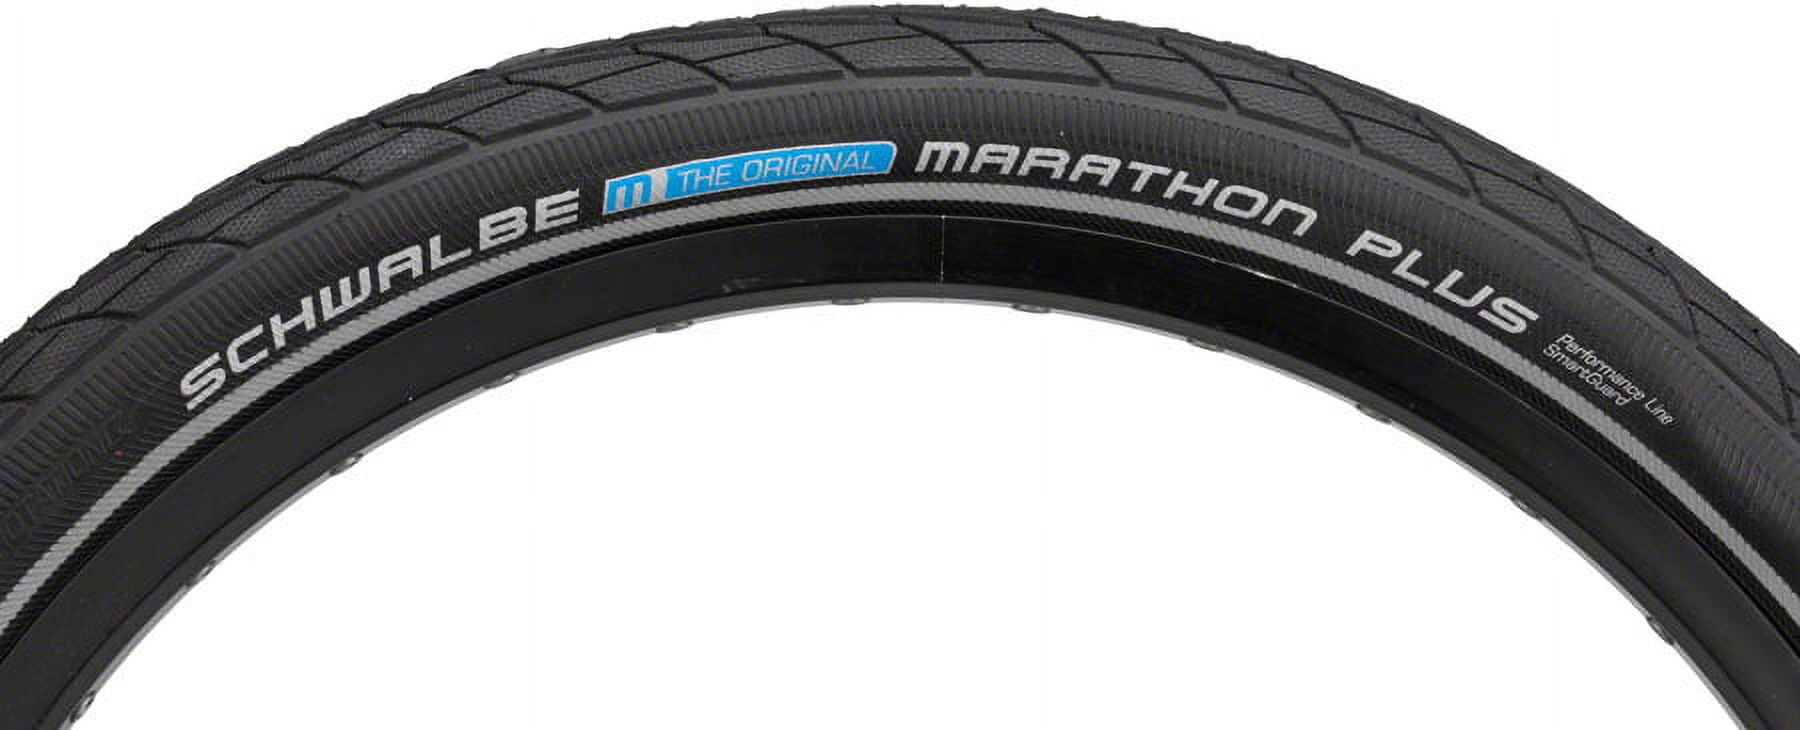 Schwalbe Marathon Plus Touring-Hybrid Bike Tire - 20 x 1.75